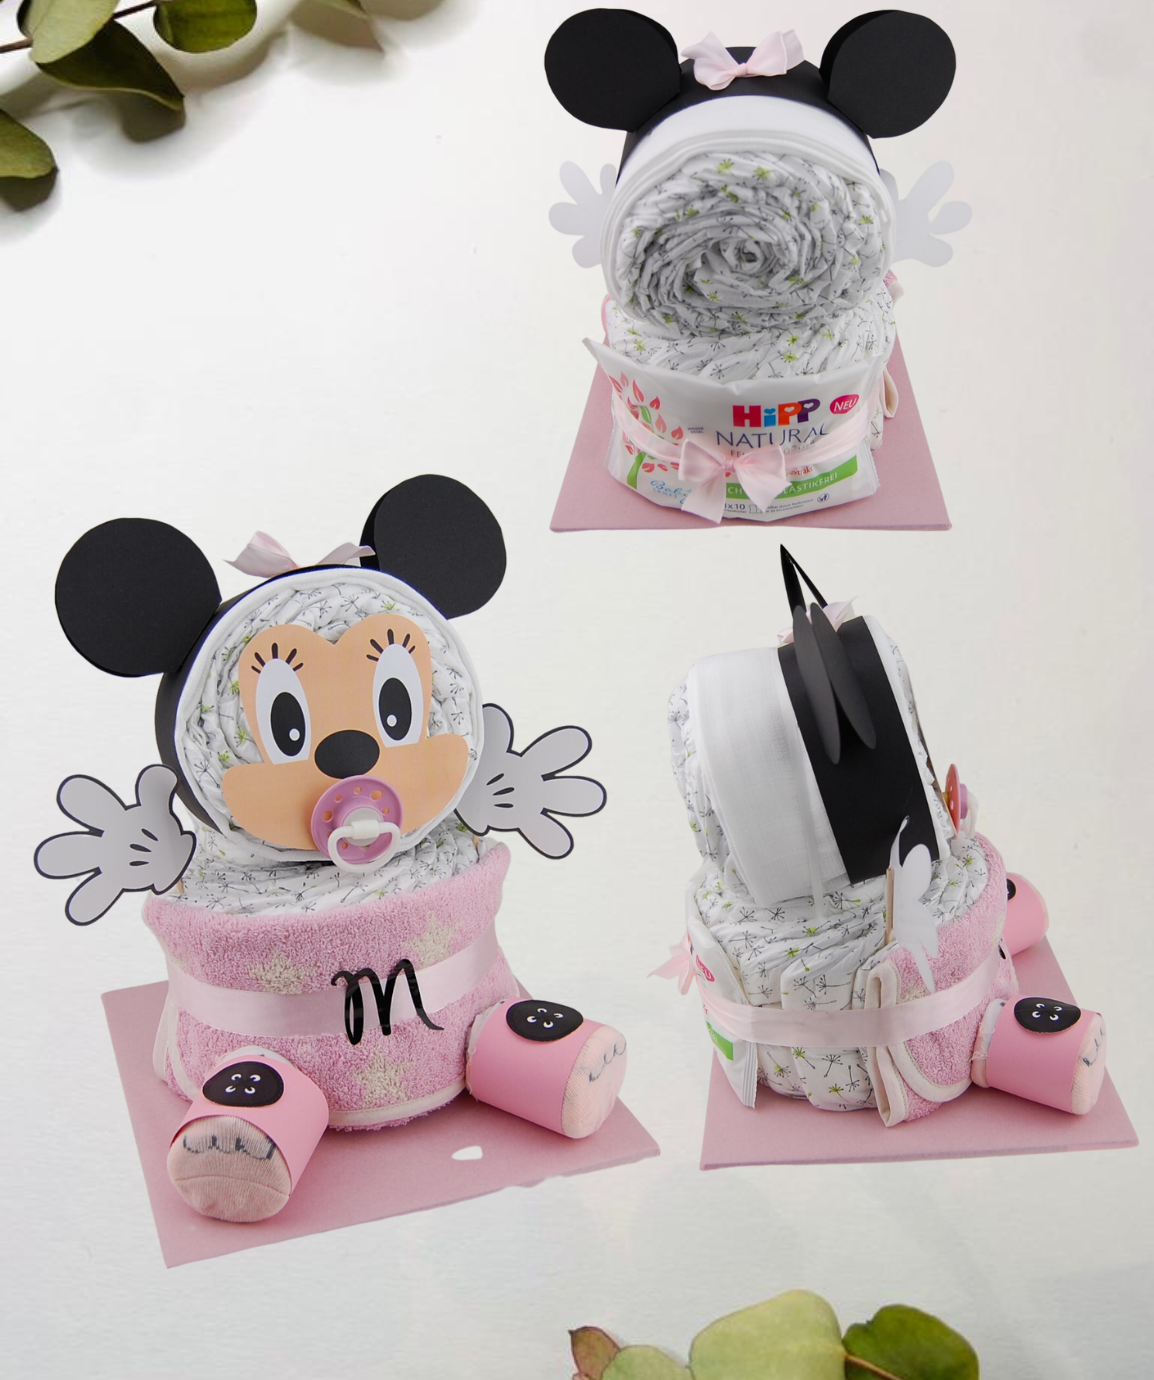 Plenková dortová myš - v požadované barvě